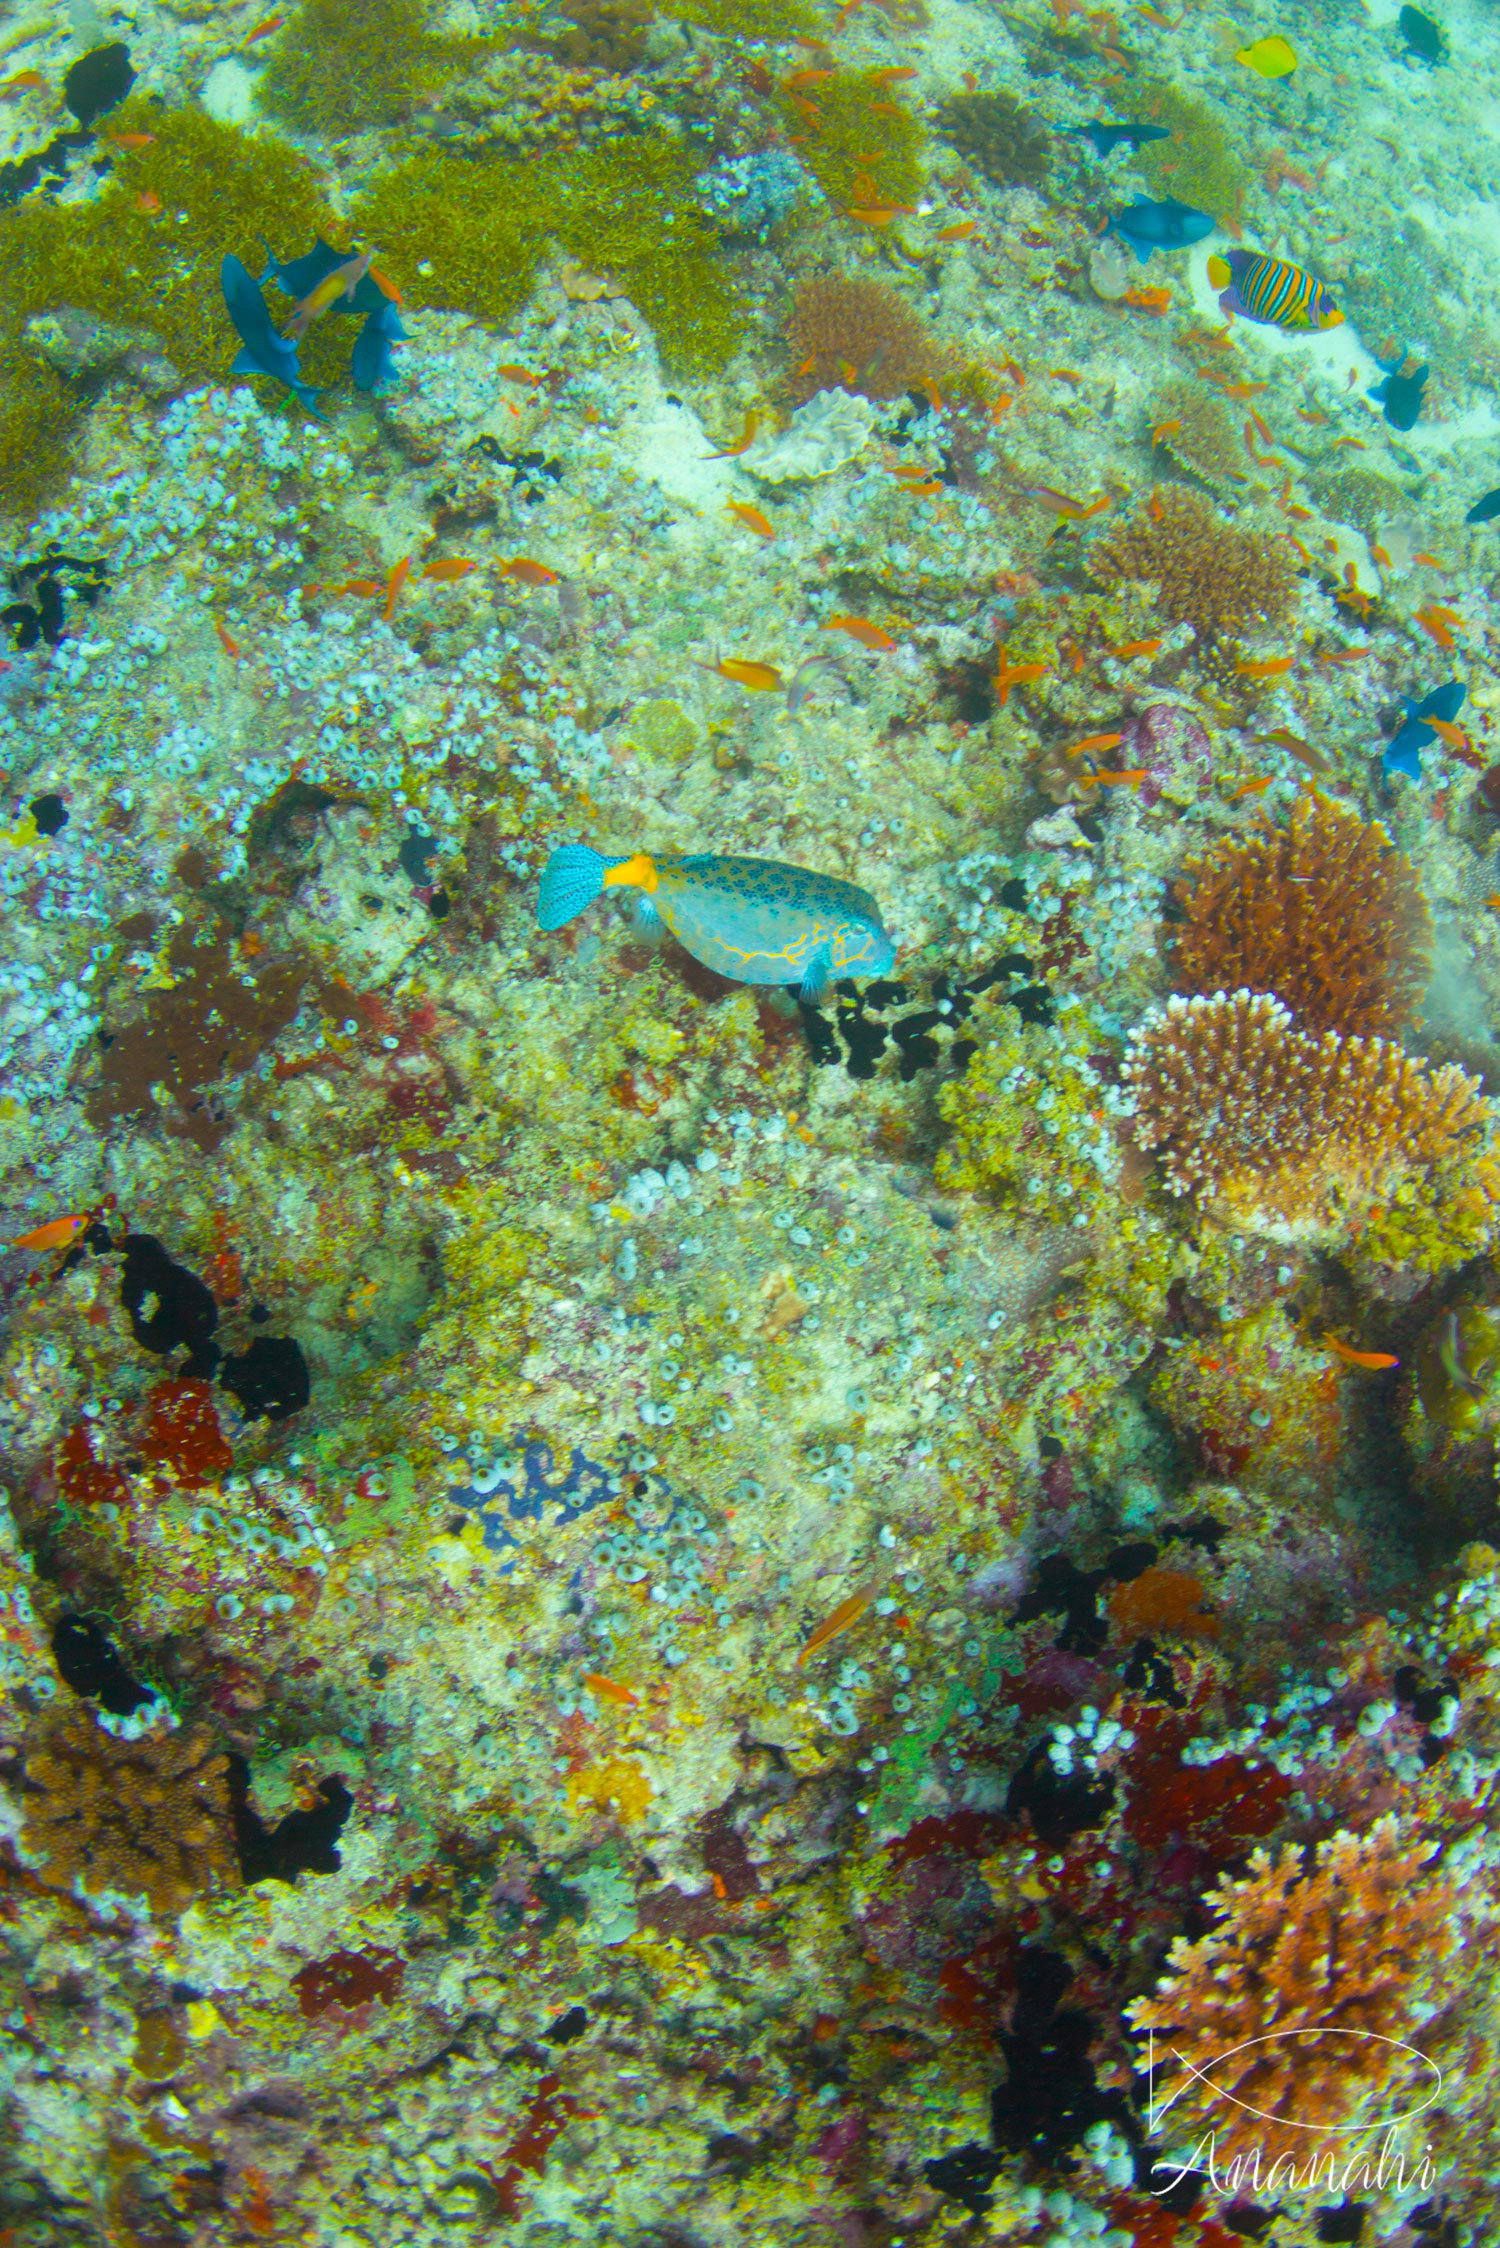 Yellow boxfish of Maldives